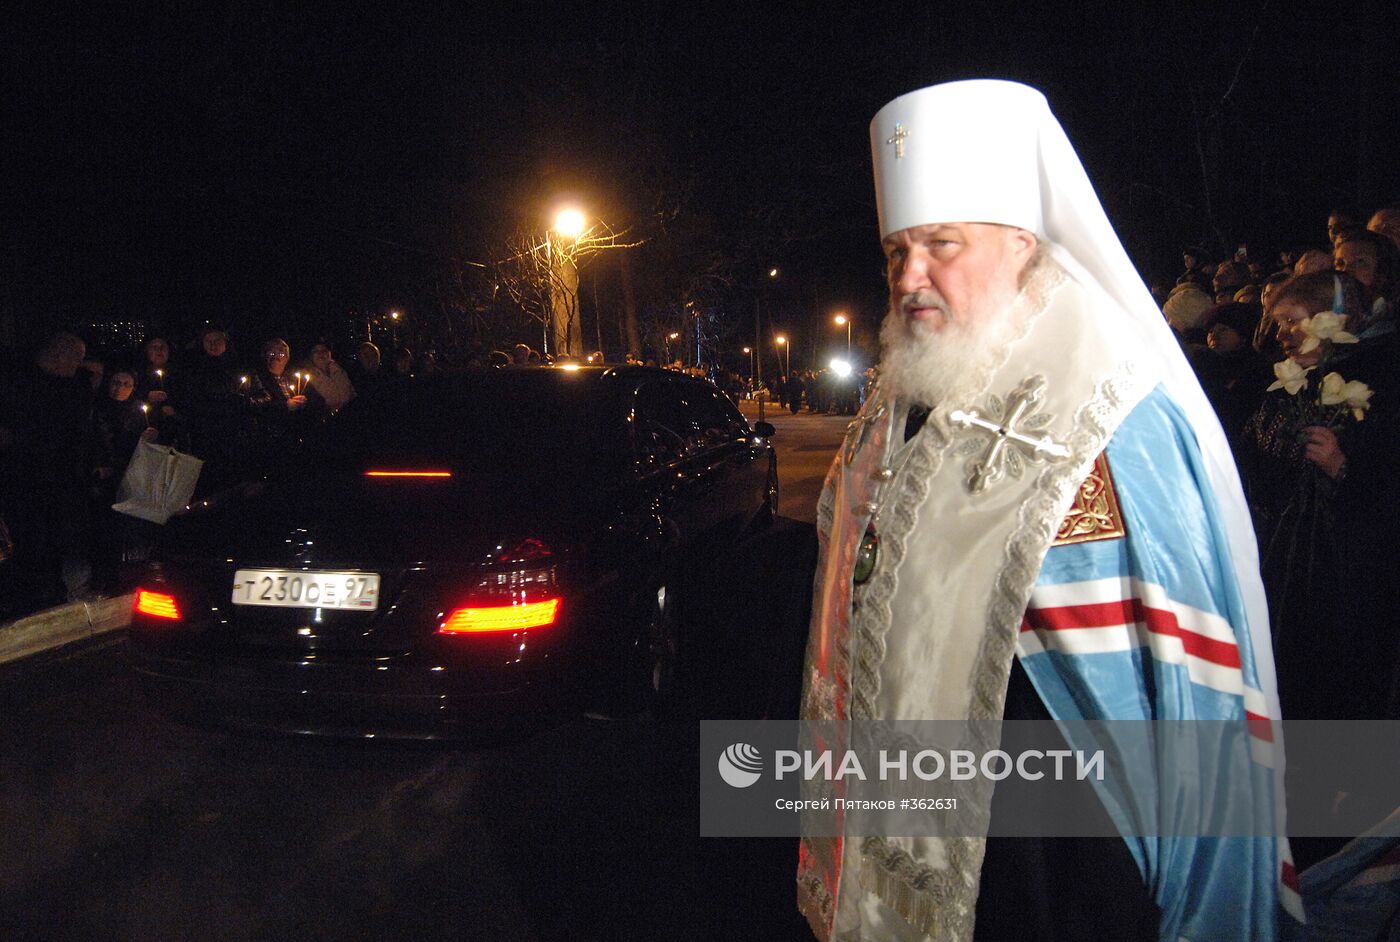 Церемония прощания с патриархом Алексием Вторым